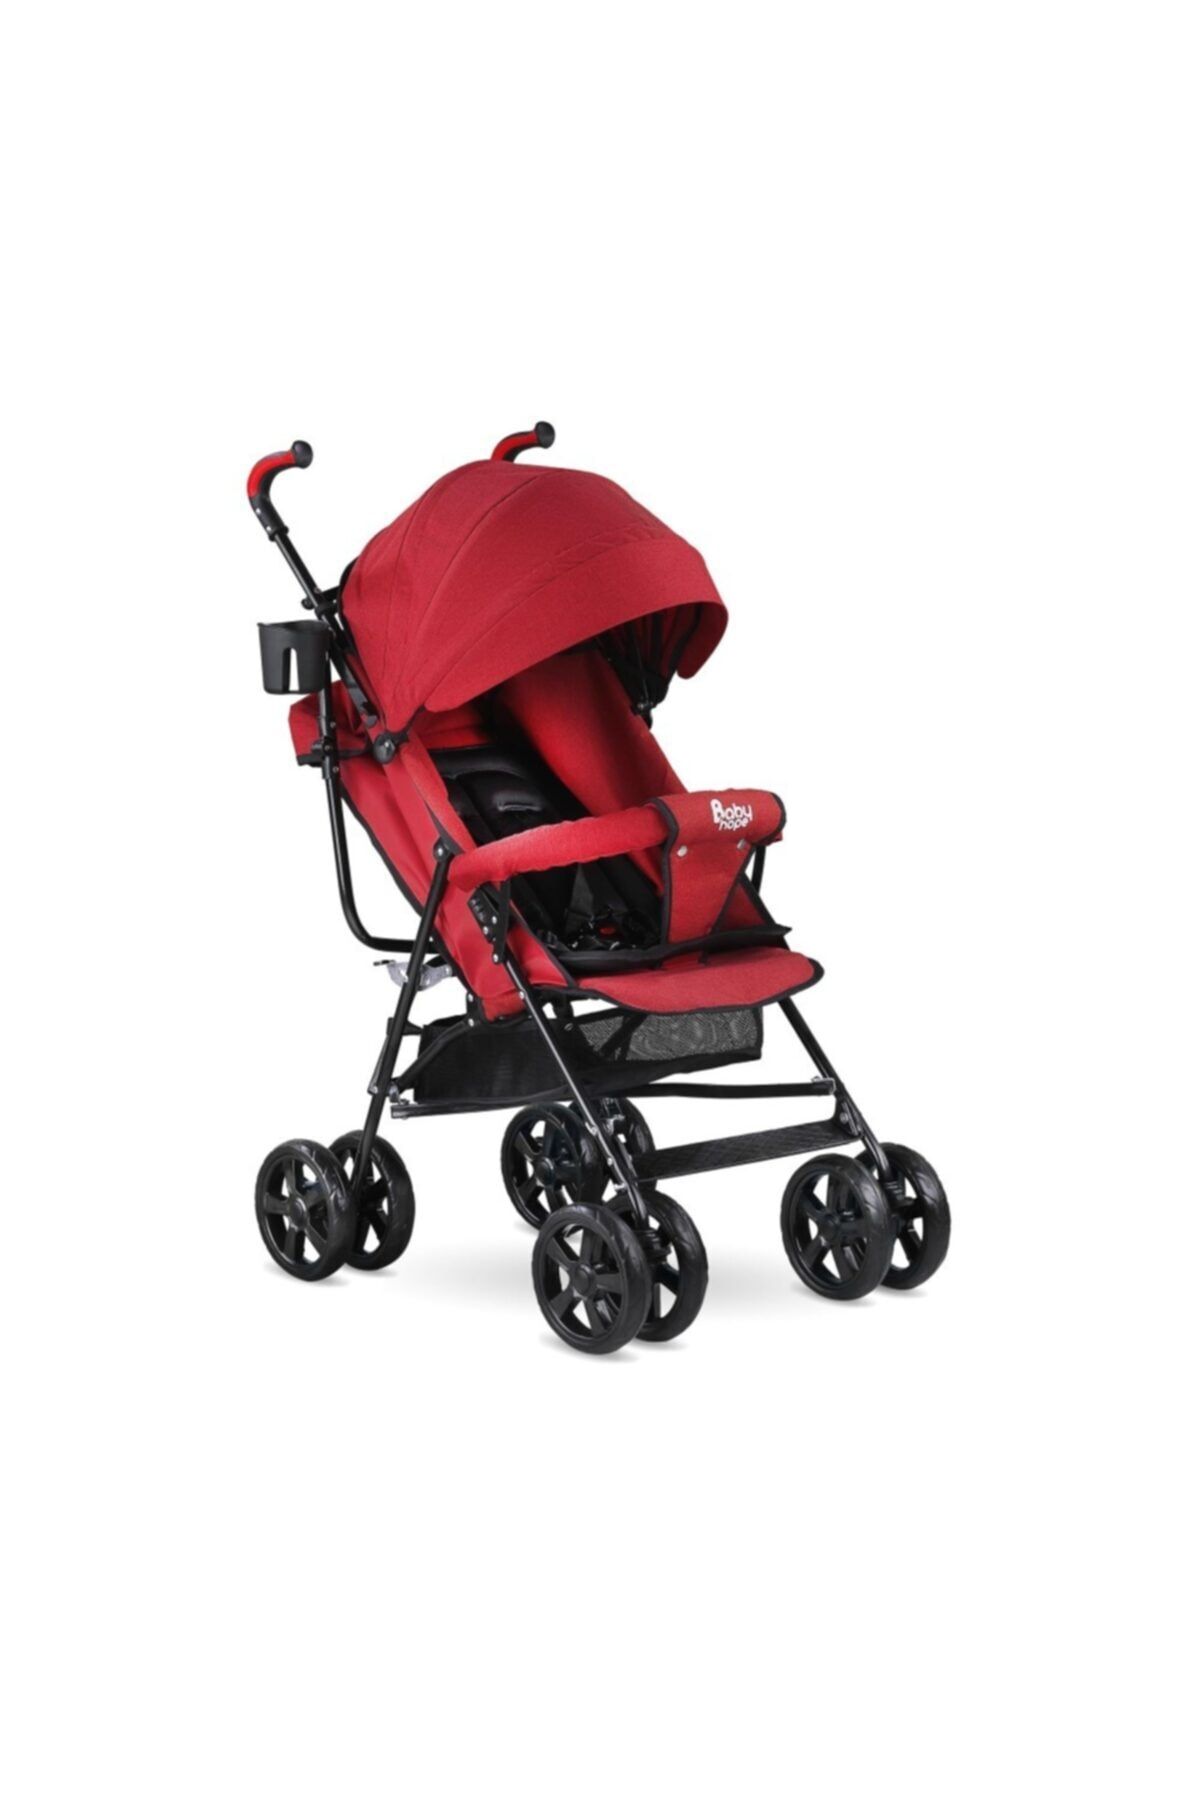 Babyhope Sa-7 Tam Yatarlı Baston Bebek Arabası Kırmızı